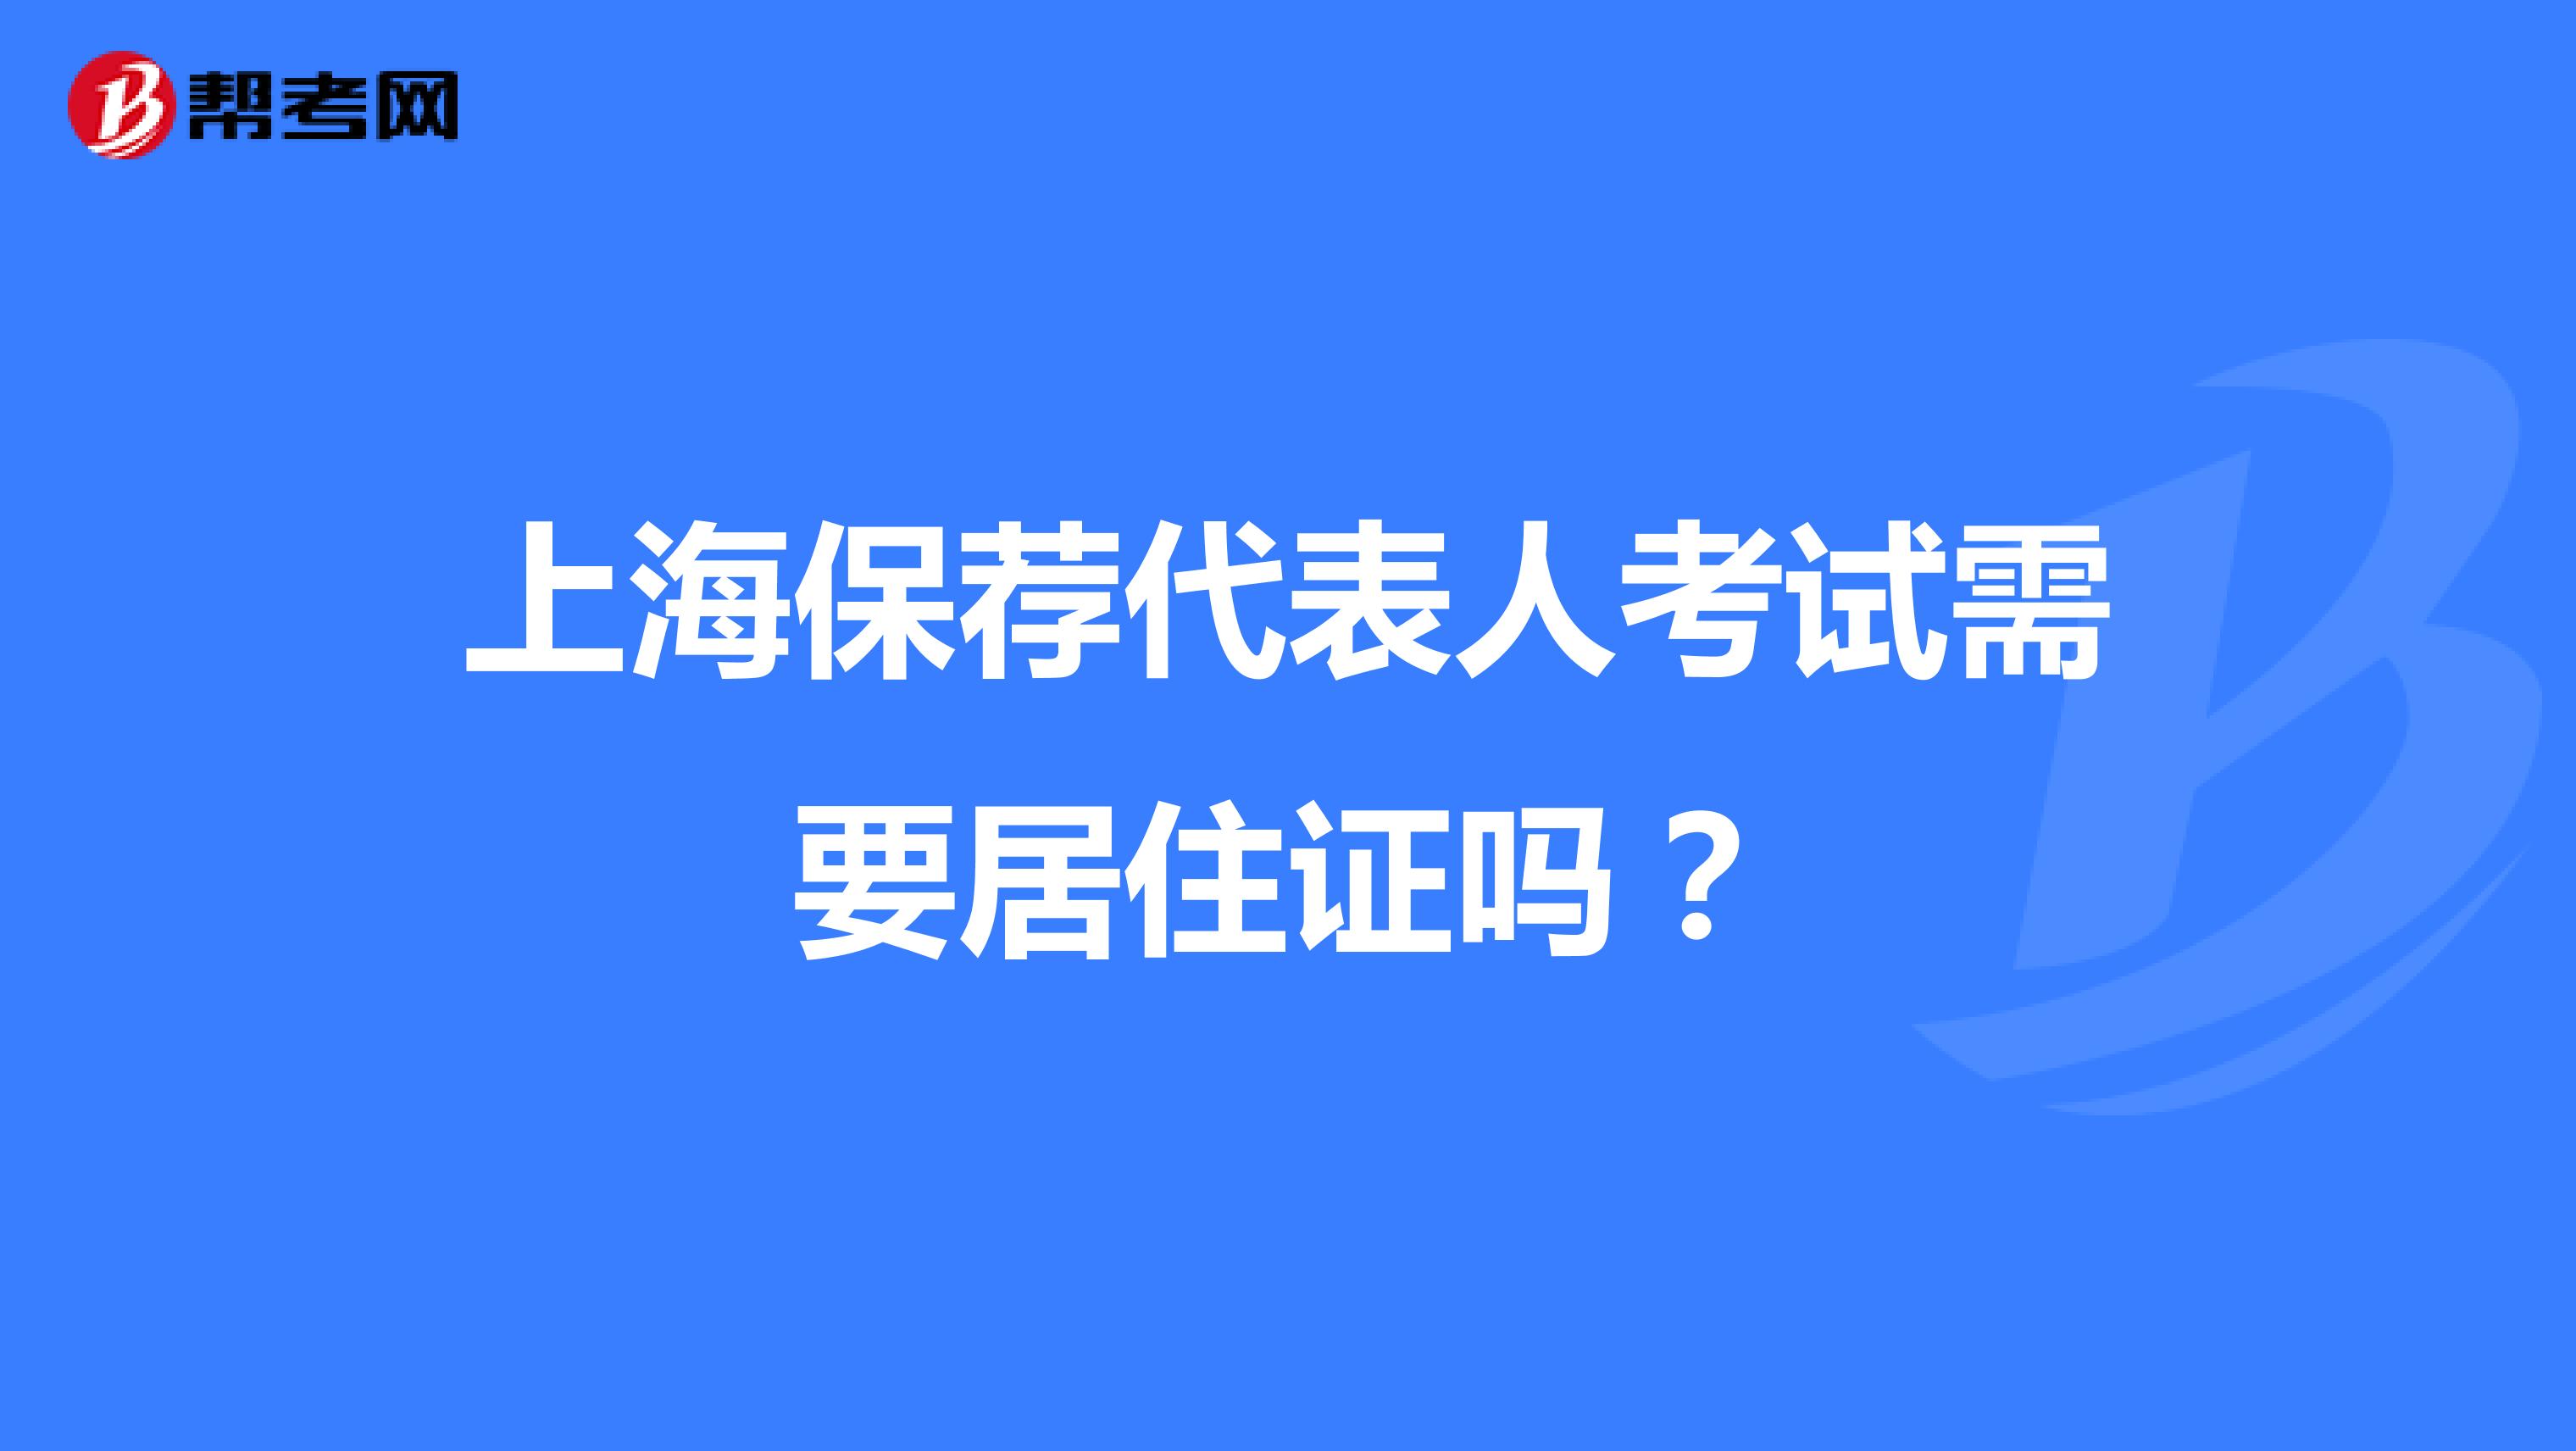 上海保荐代表人考试需要居住证吗？